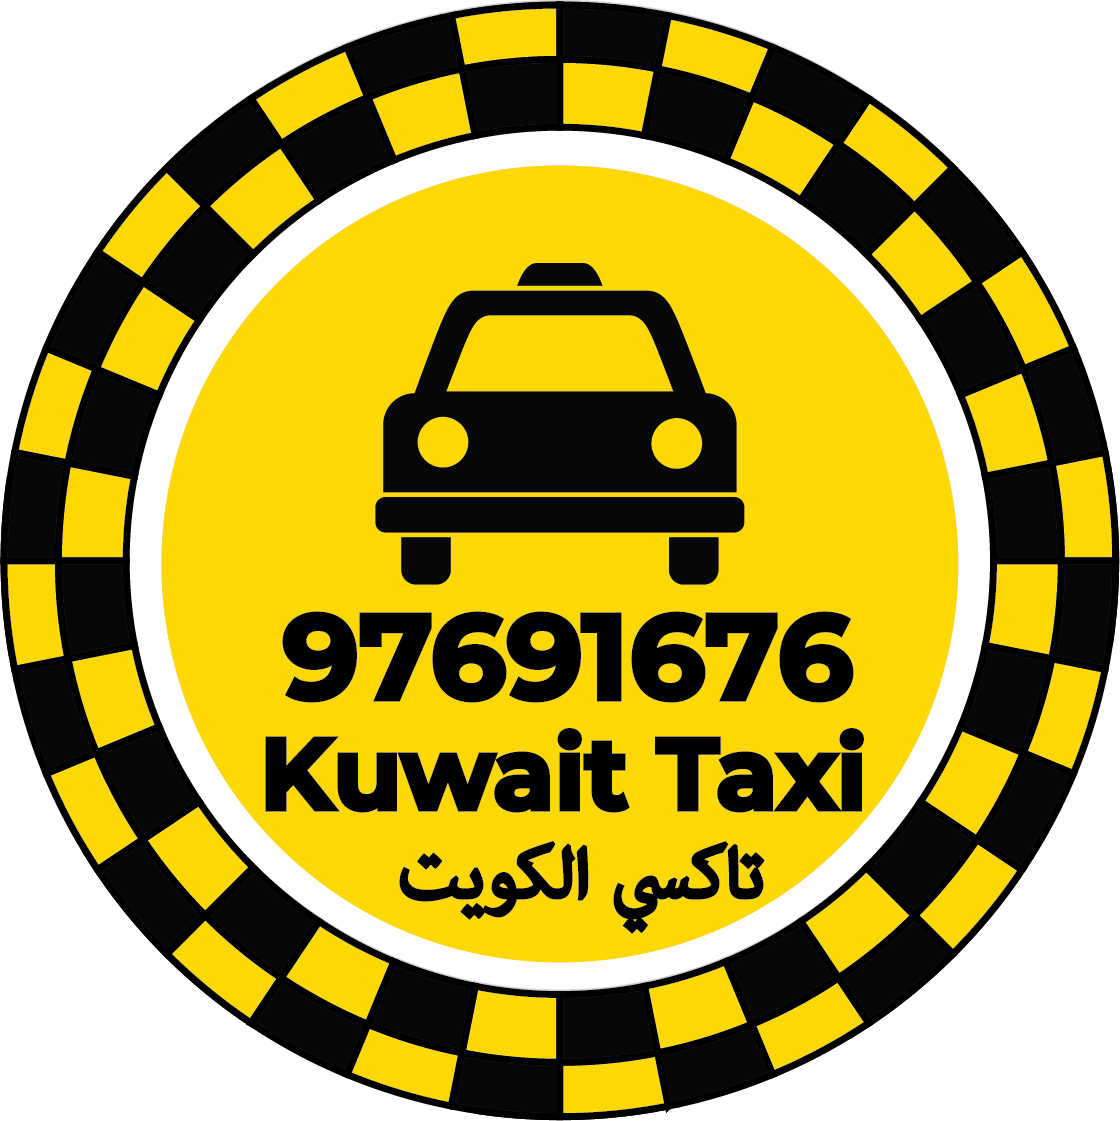 رقم تاكسي ا الرقة – تاكسي الرقة كويت